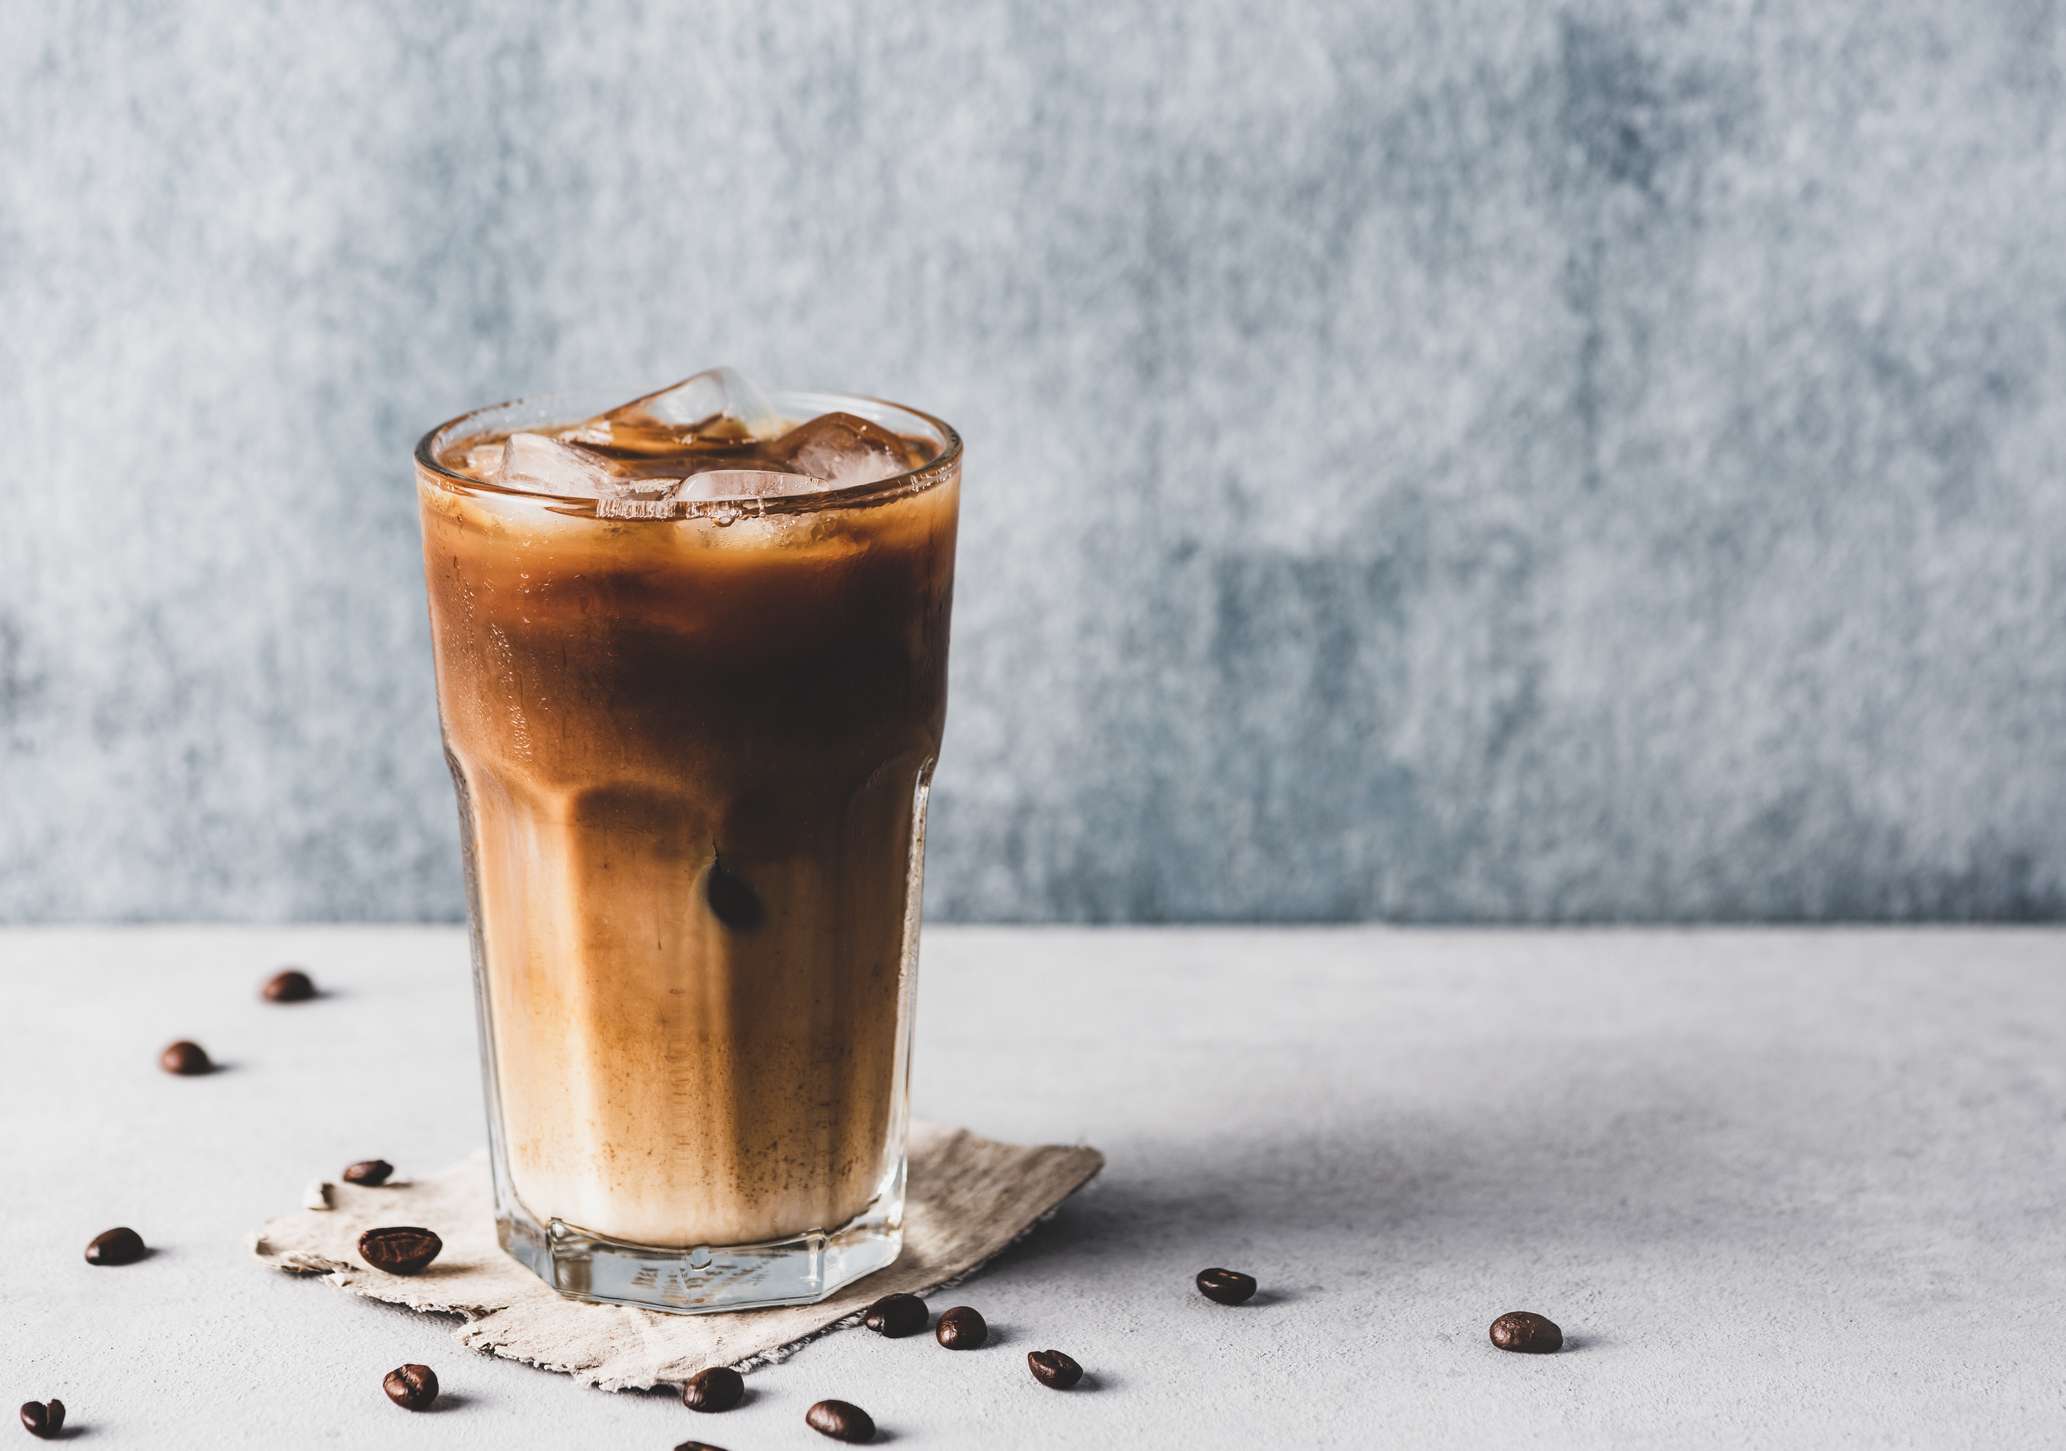 La differenza tra cold brew e il caffè freddo (iced coffee)